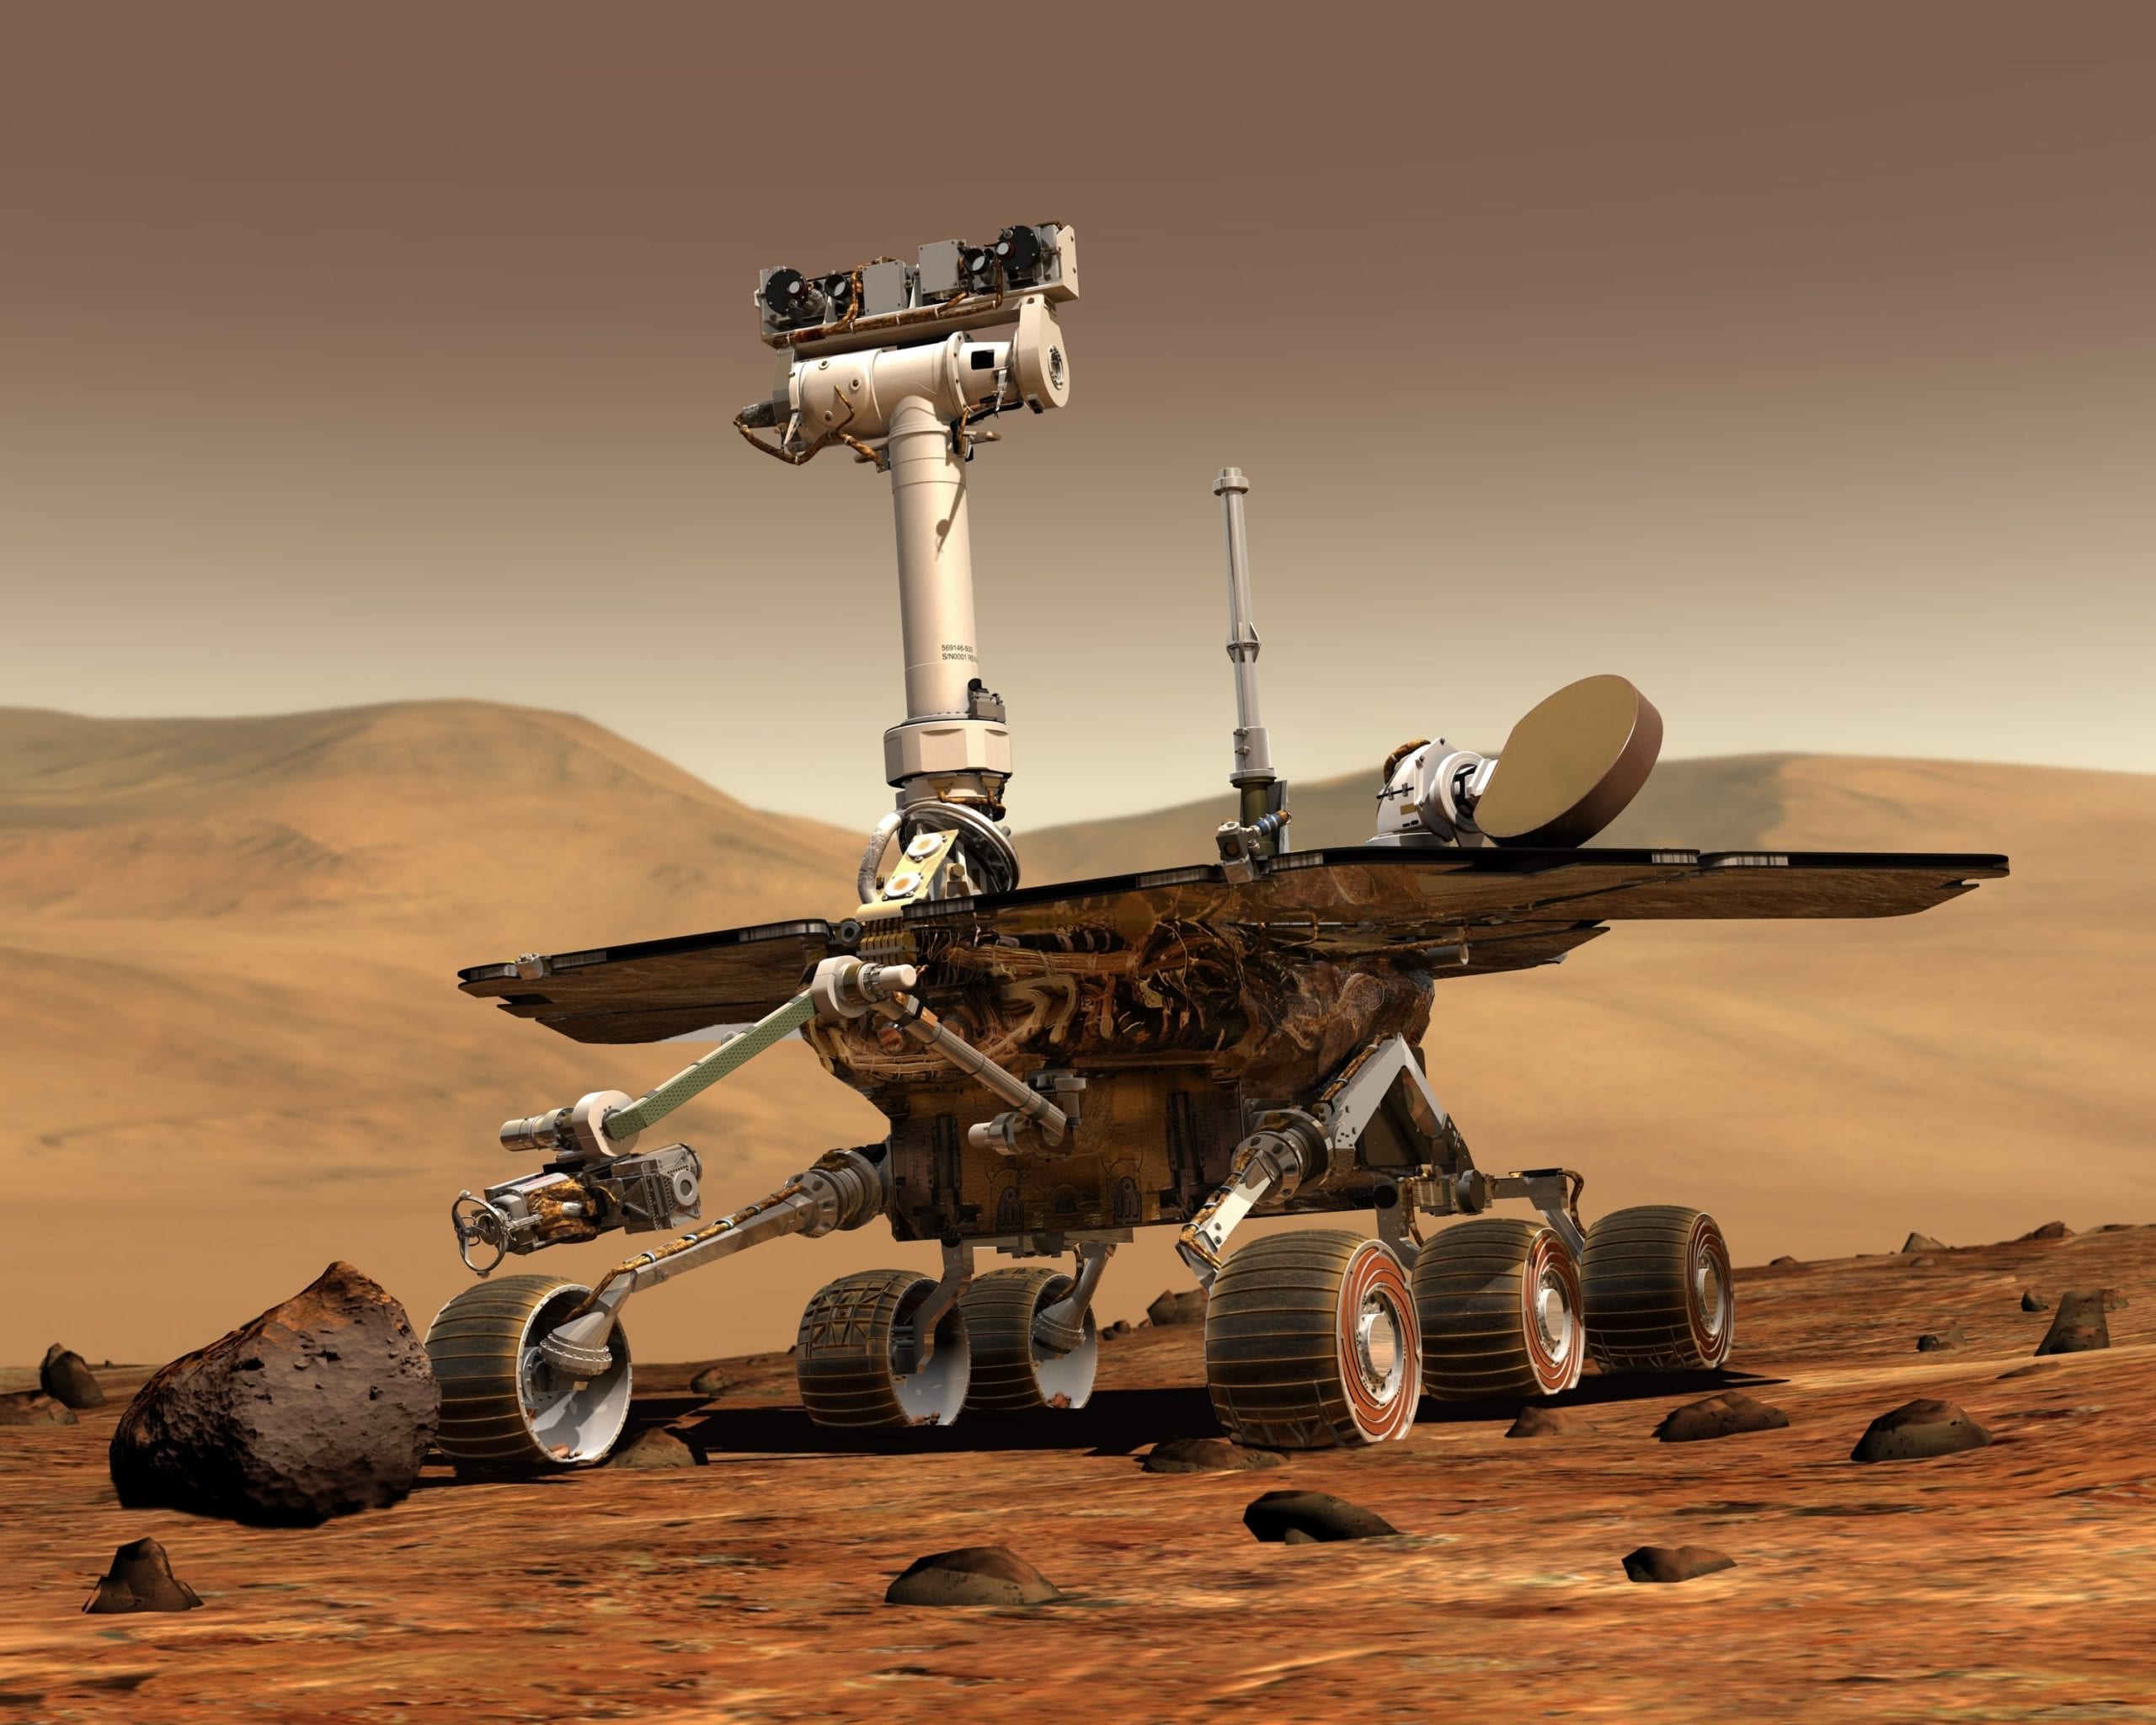 L’estrazione dell’ossigeno su Marte cambierà la storia